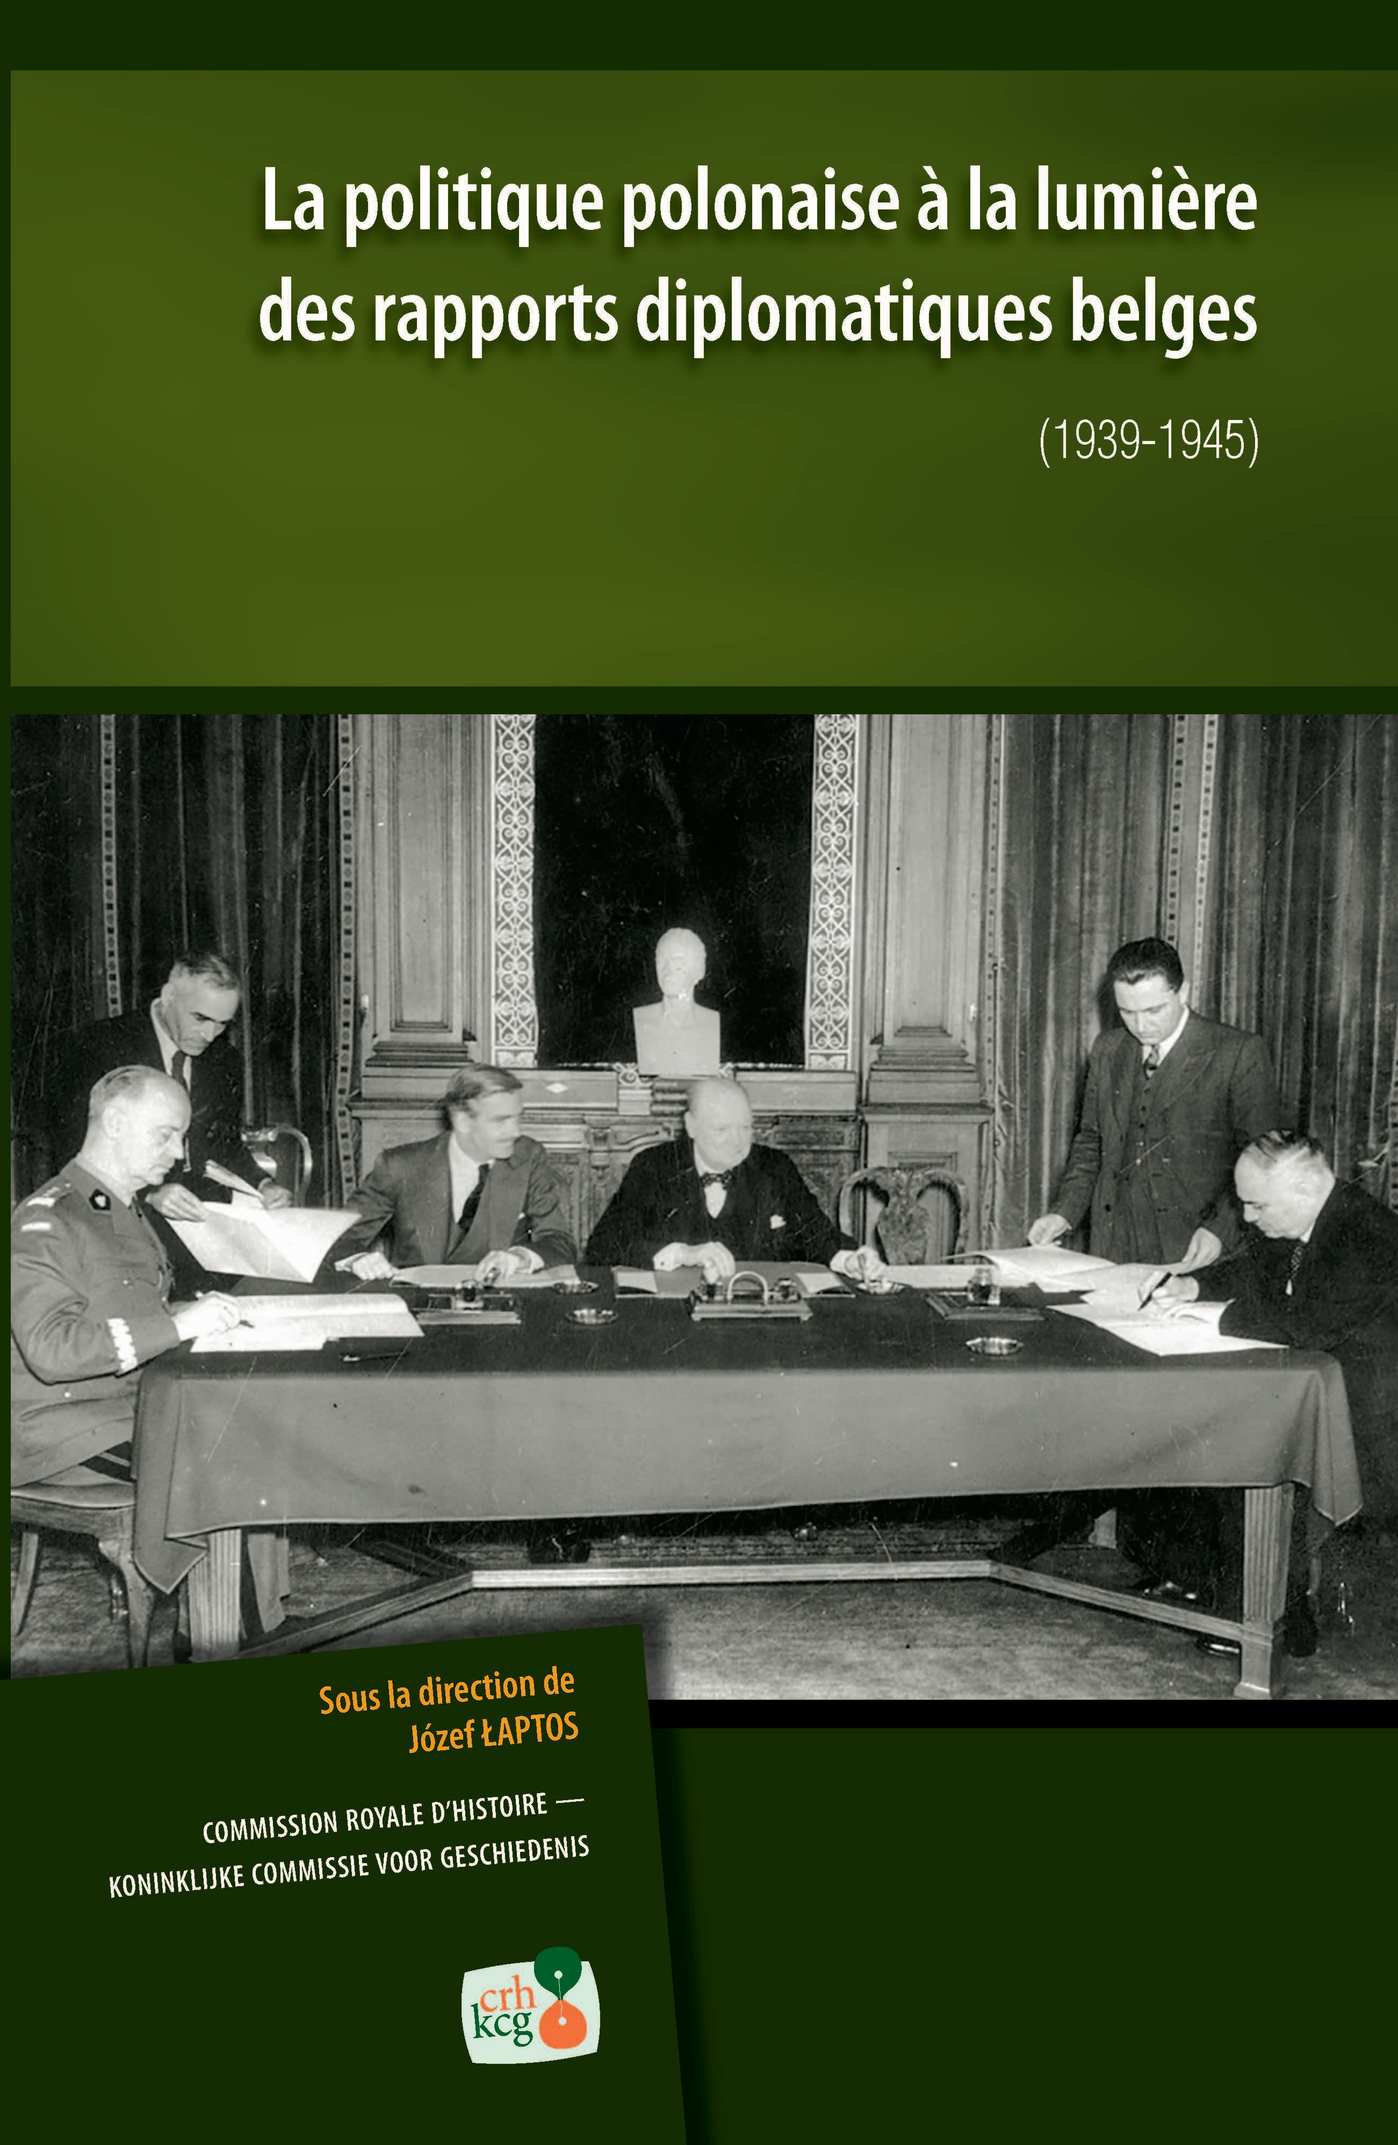 LA POLITIQUE POLONAISE À LA LUMIÈRE DES RAPPORTS DIPLOMATIQUES BELGES (1939-1945) (kcg)